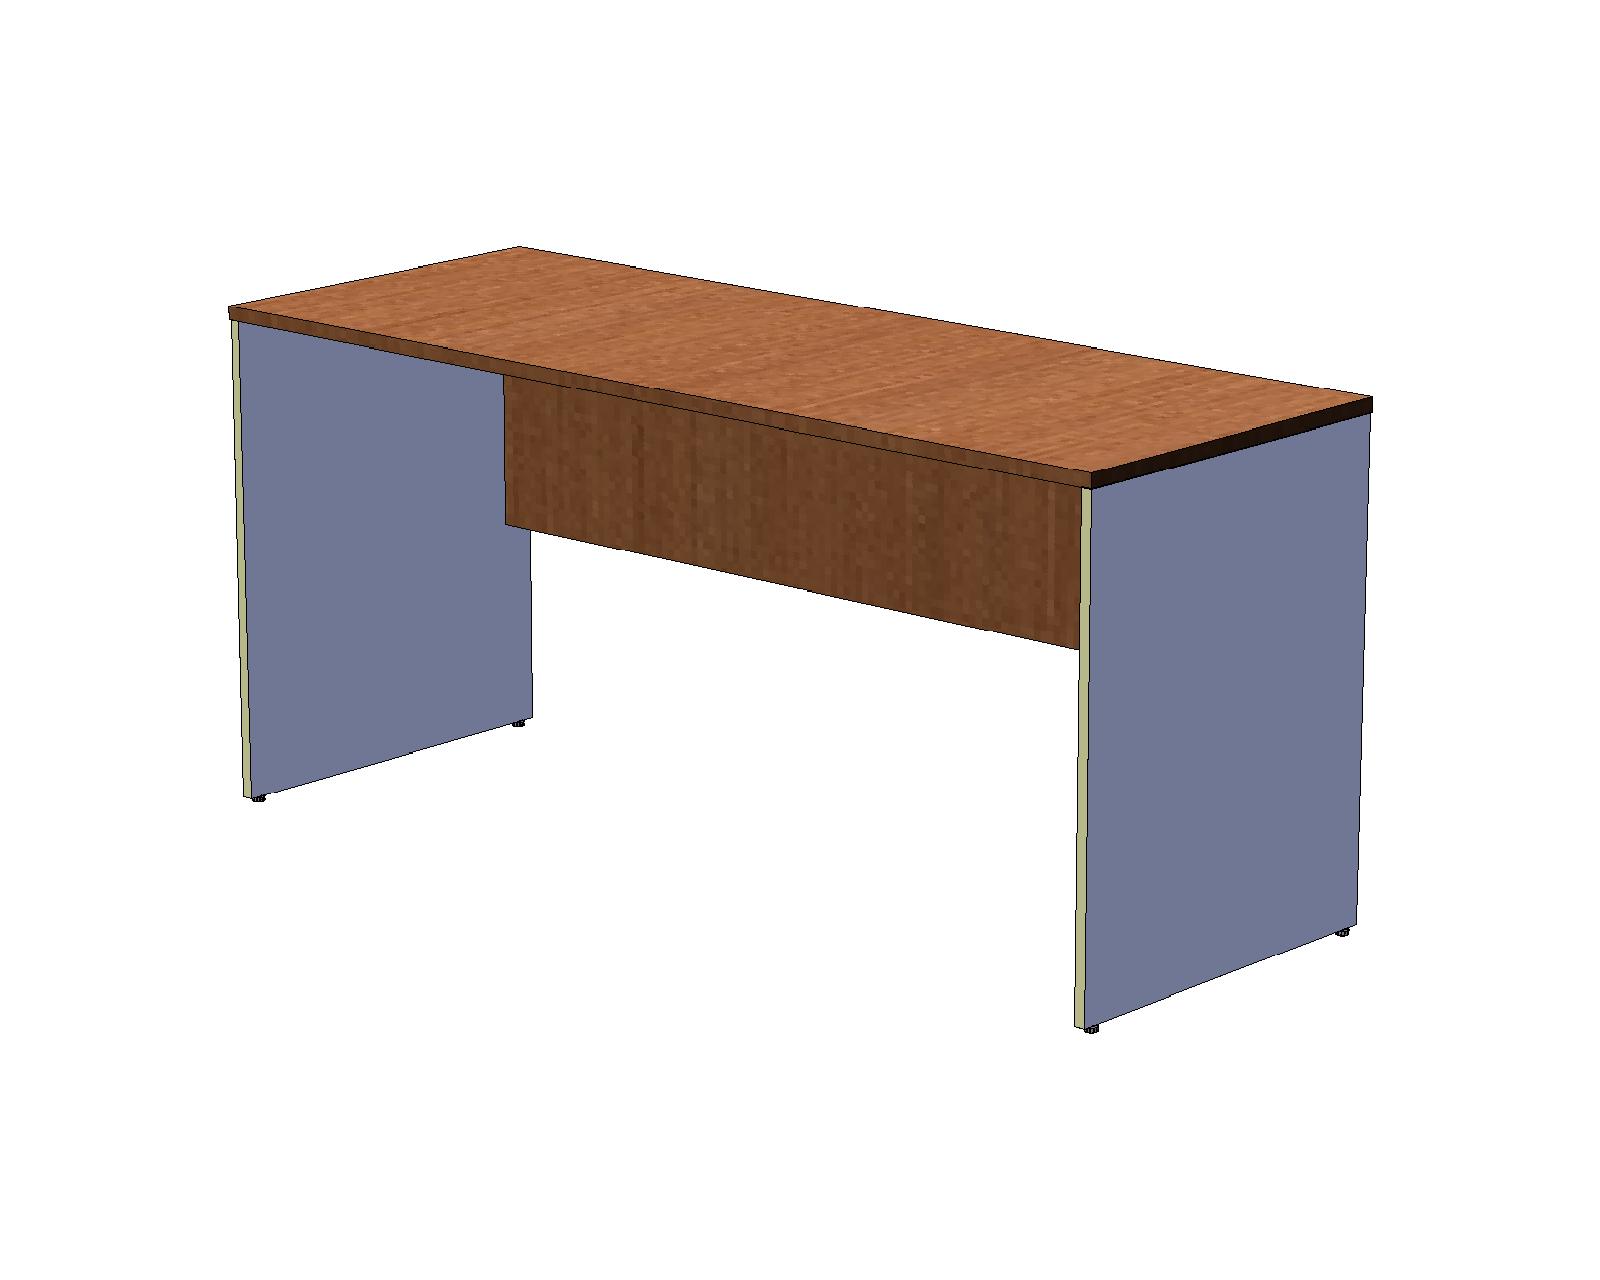 Офисный стол шир. 60 см на панельном каркасе 160 см, вишня оксфорд/серый A16.1136/CH10